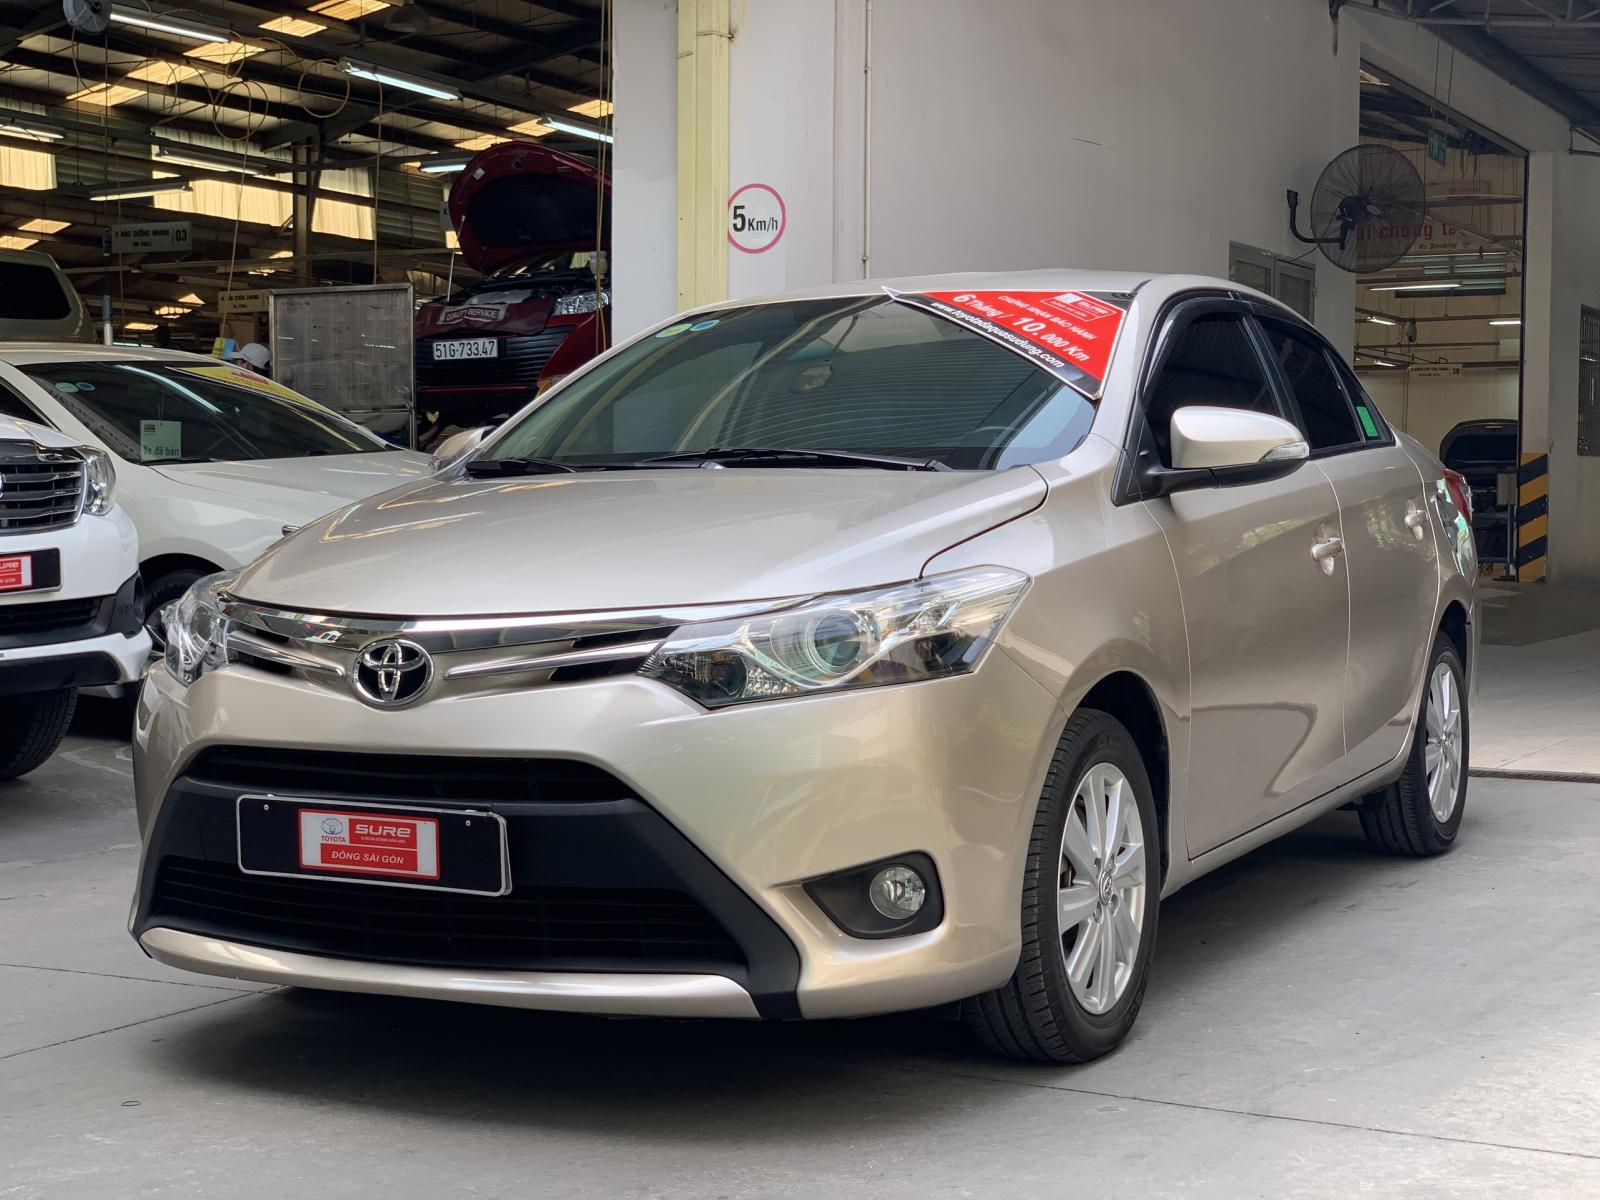 Toyota Vios 1.5 2016 - Vios G 2016 xe gia đình chất cứng cáp